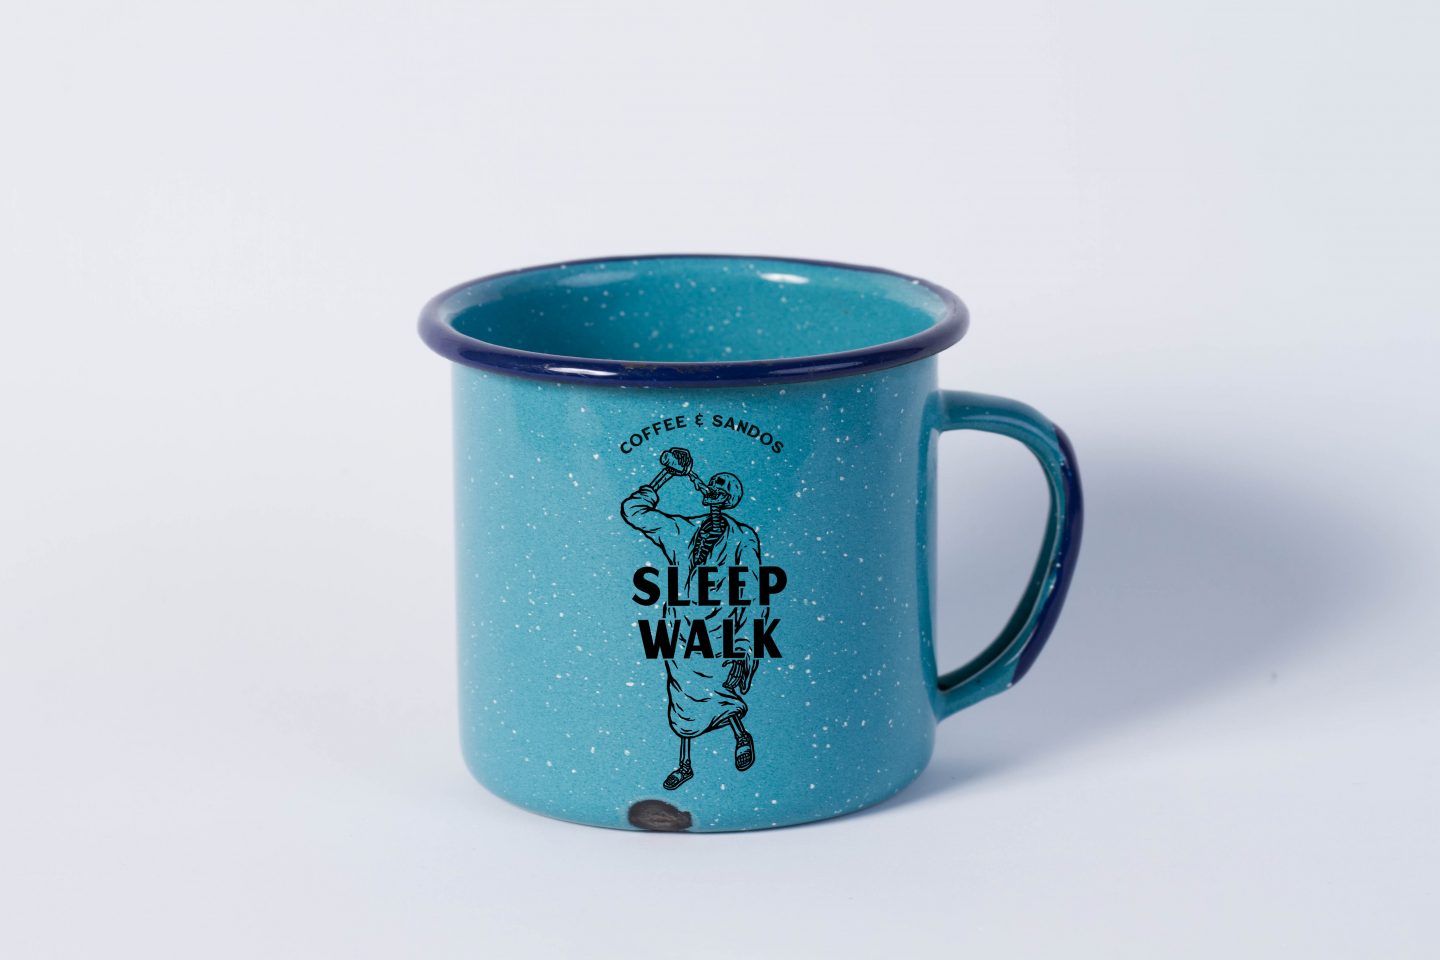 Sleepwalk logo on a mug